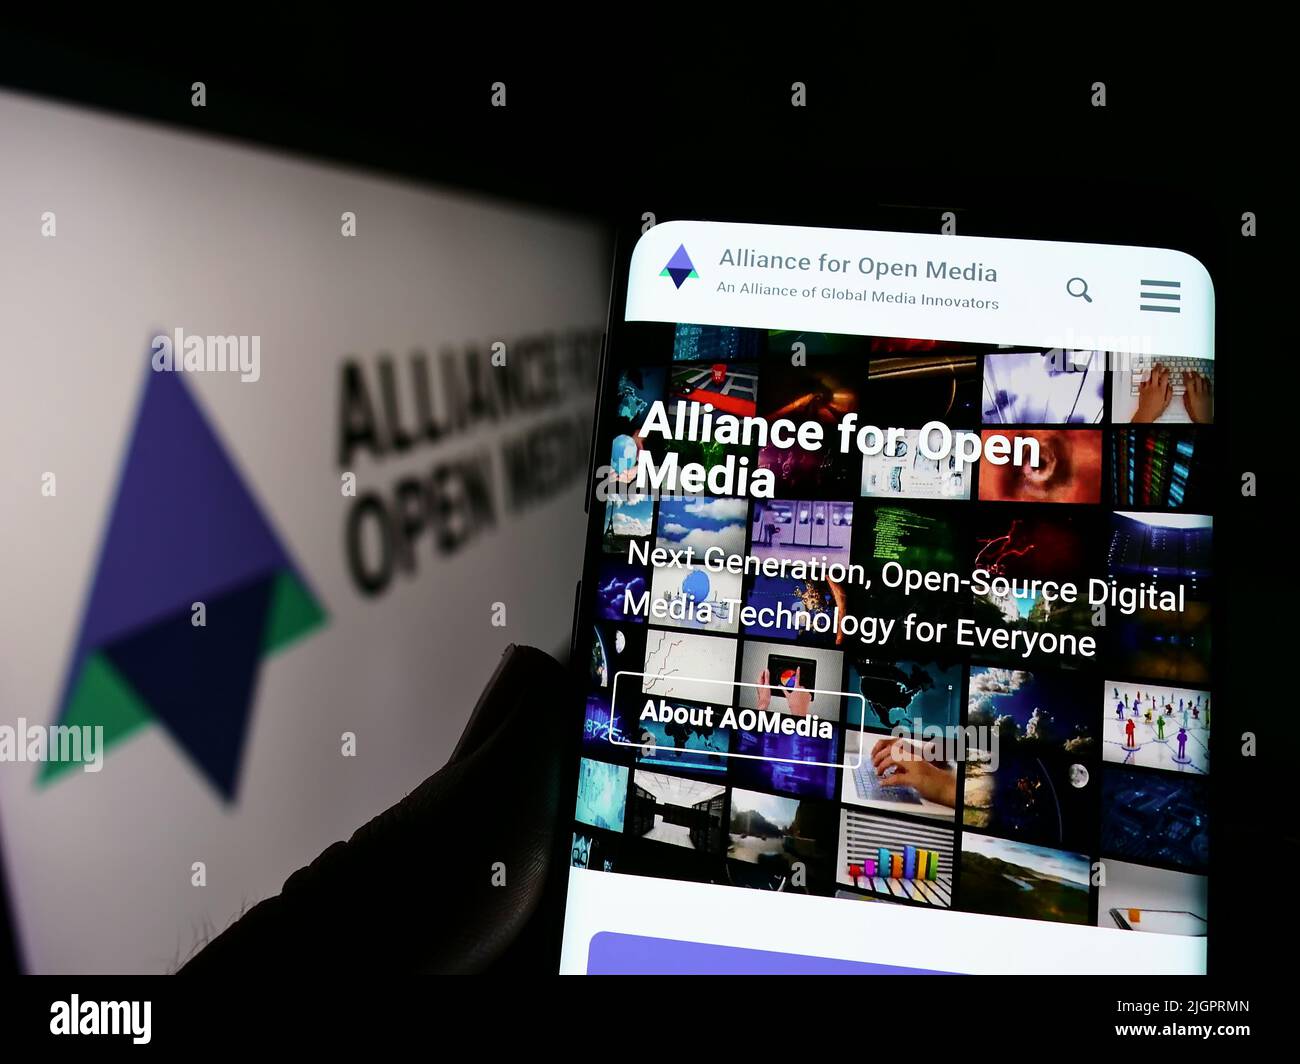 Personne tenant un téléphone portable avec la page web du consortium Alliance for Open Media (AOMedia) à l'écran avec logo. Concentrez-vous sur le centre de l'écran du téléphone. Banque D'Images